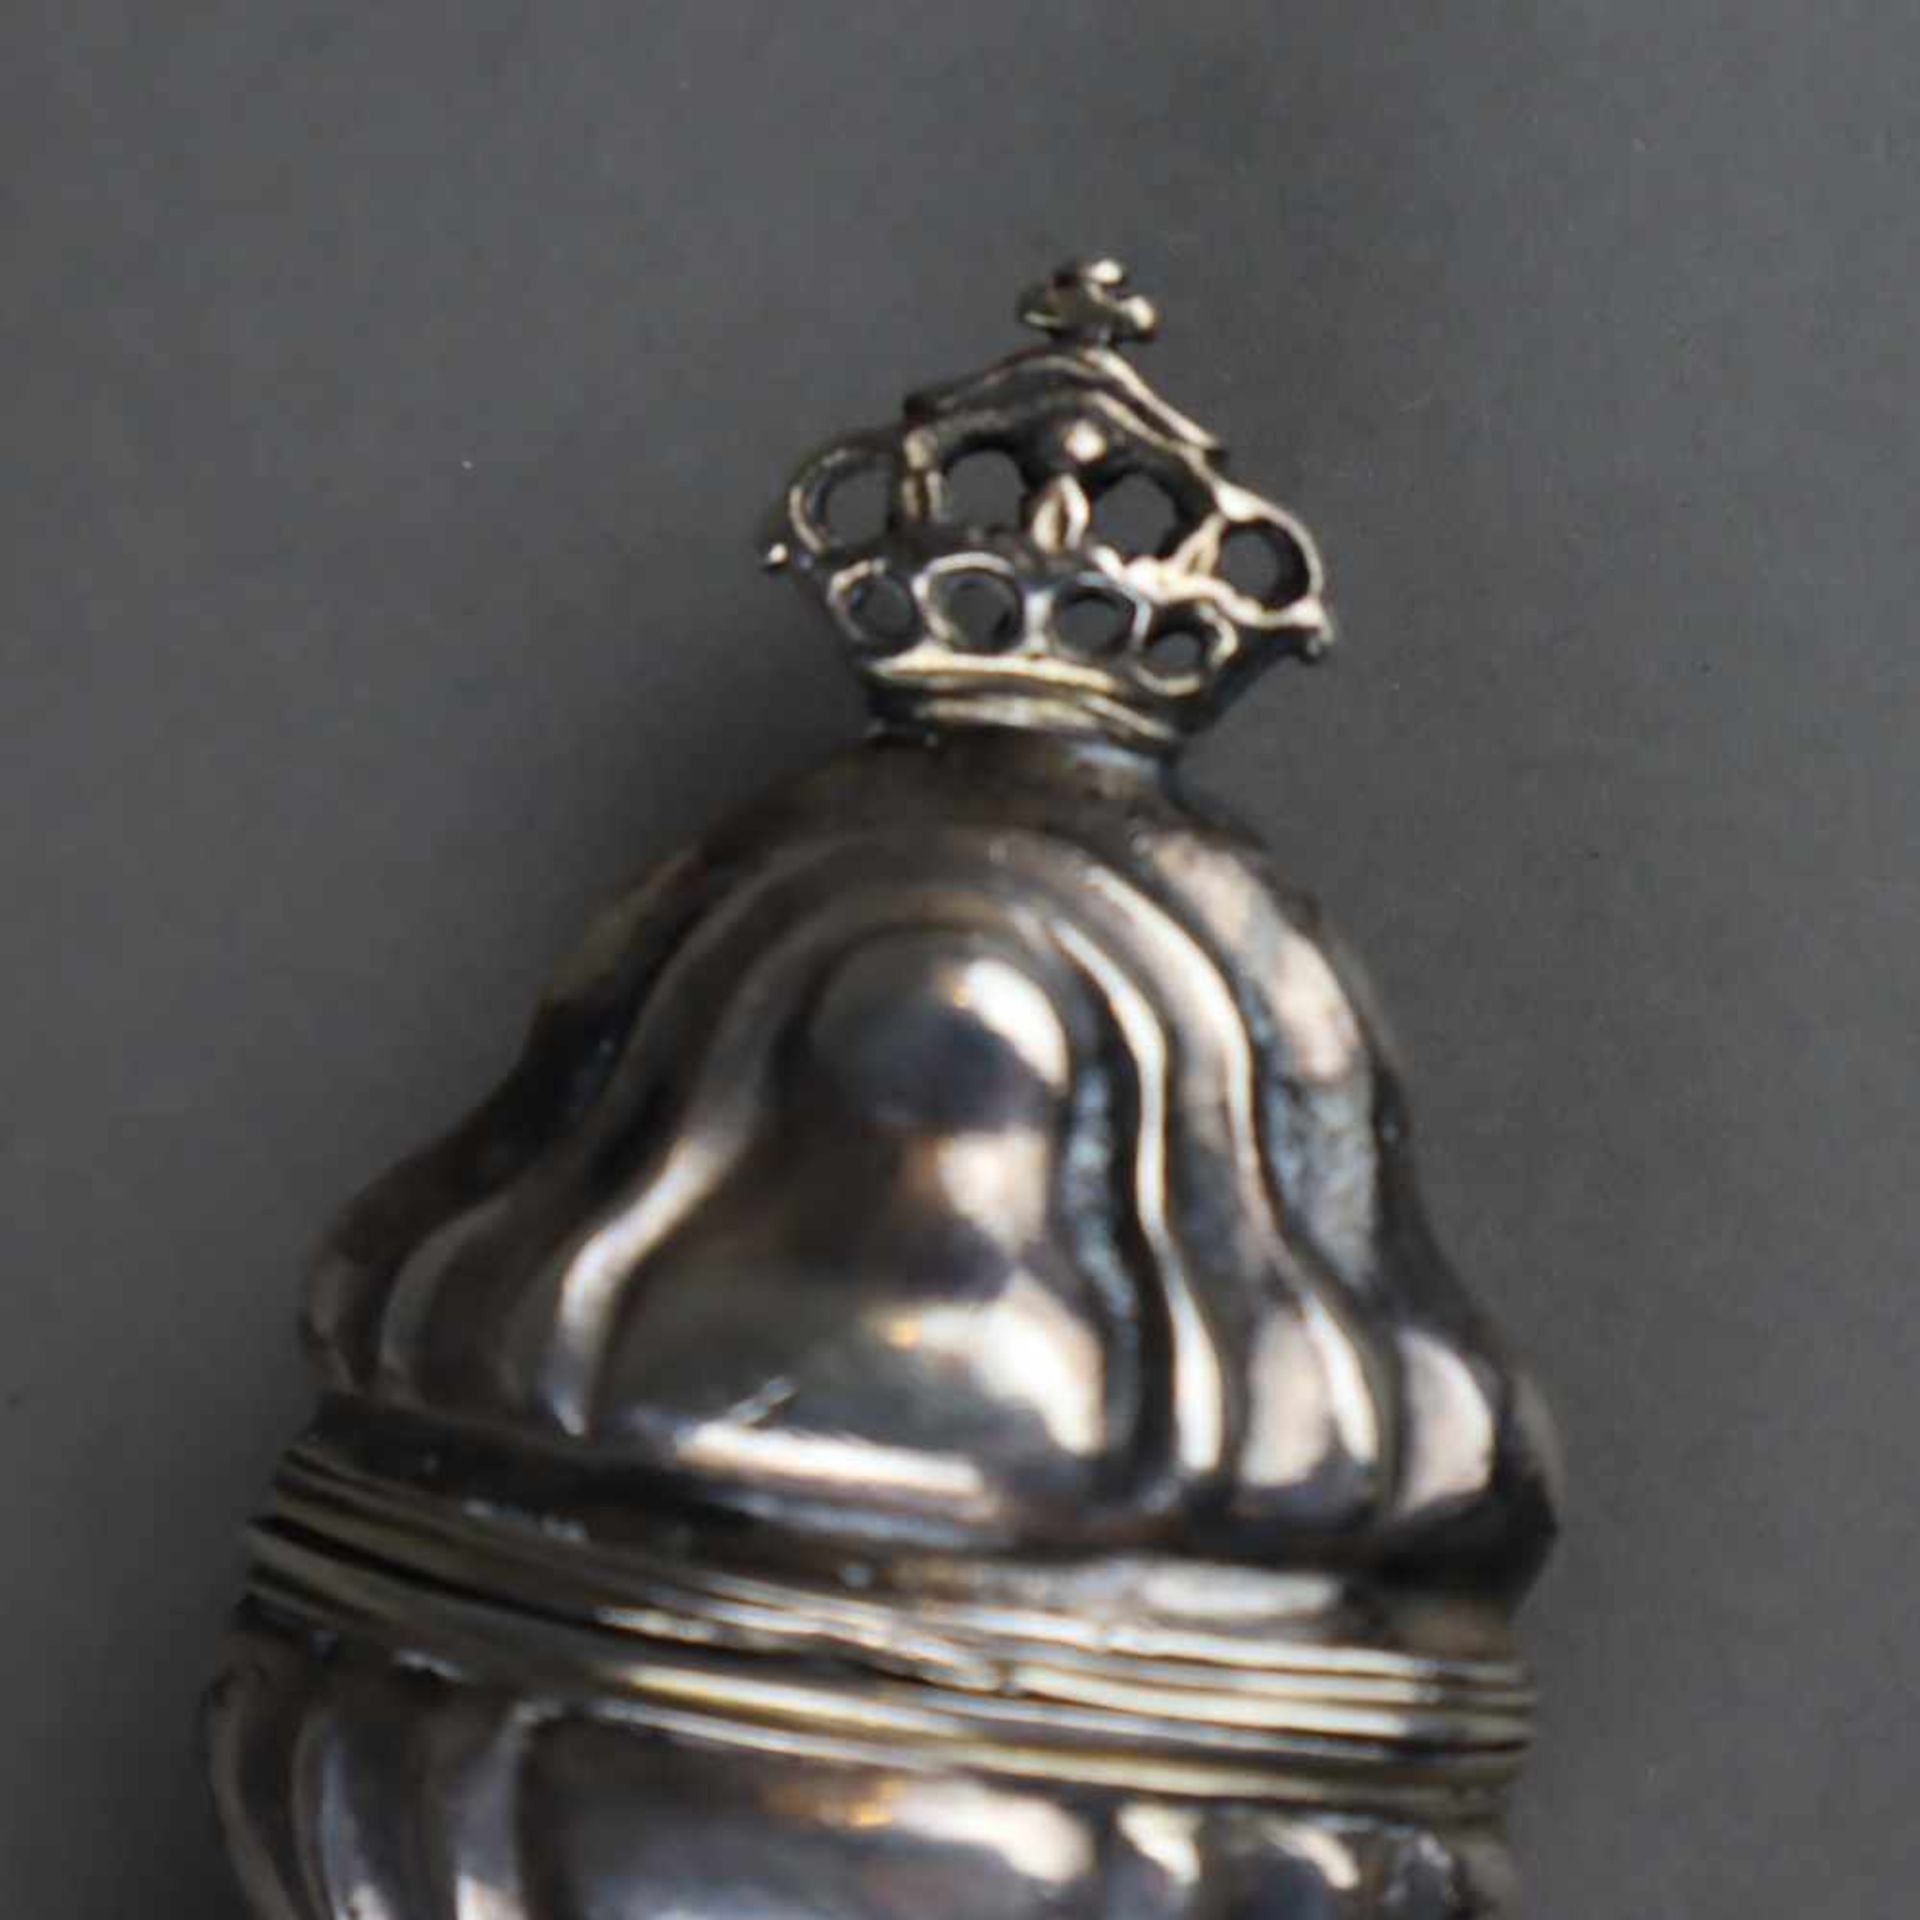 Silberhülle für Flakon - auf ovalem Stand geschweifter, godronierter Korpus mit Krone als Abschluss, - Bild 3 aus 4